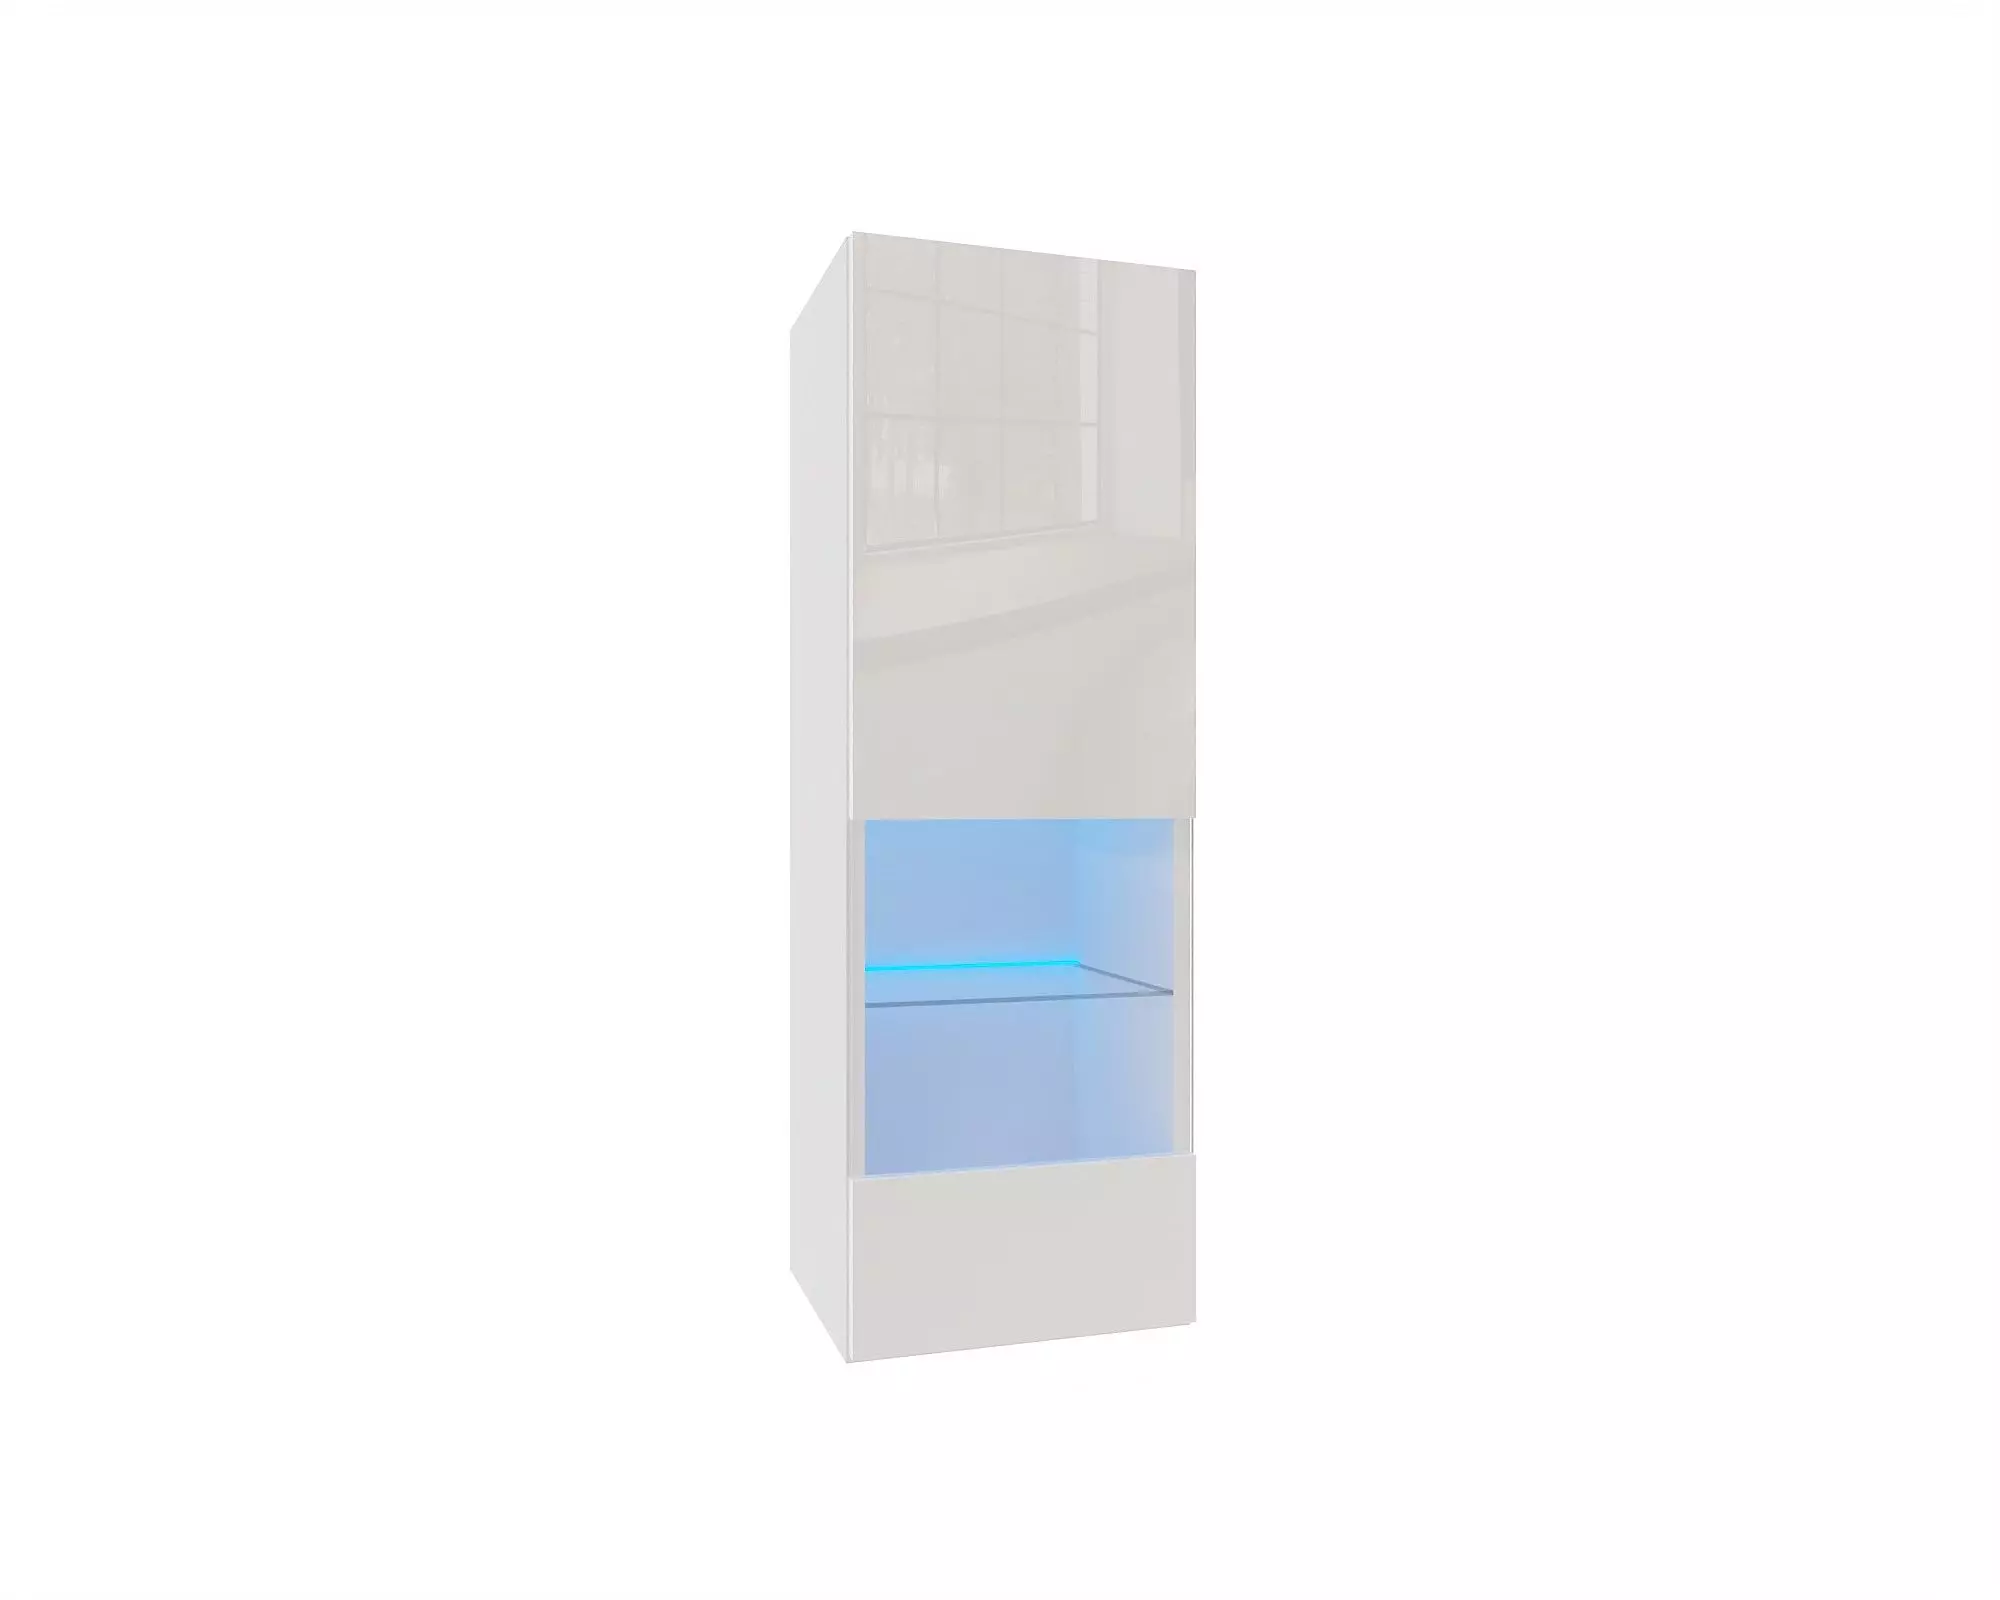 IZUMI 2 magasfényű fehér/fehér polcos, vitrines függesztett fali szekrény, 105 WH